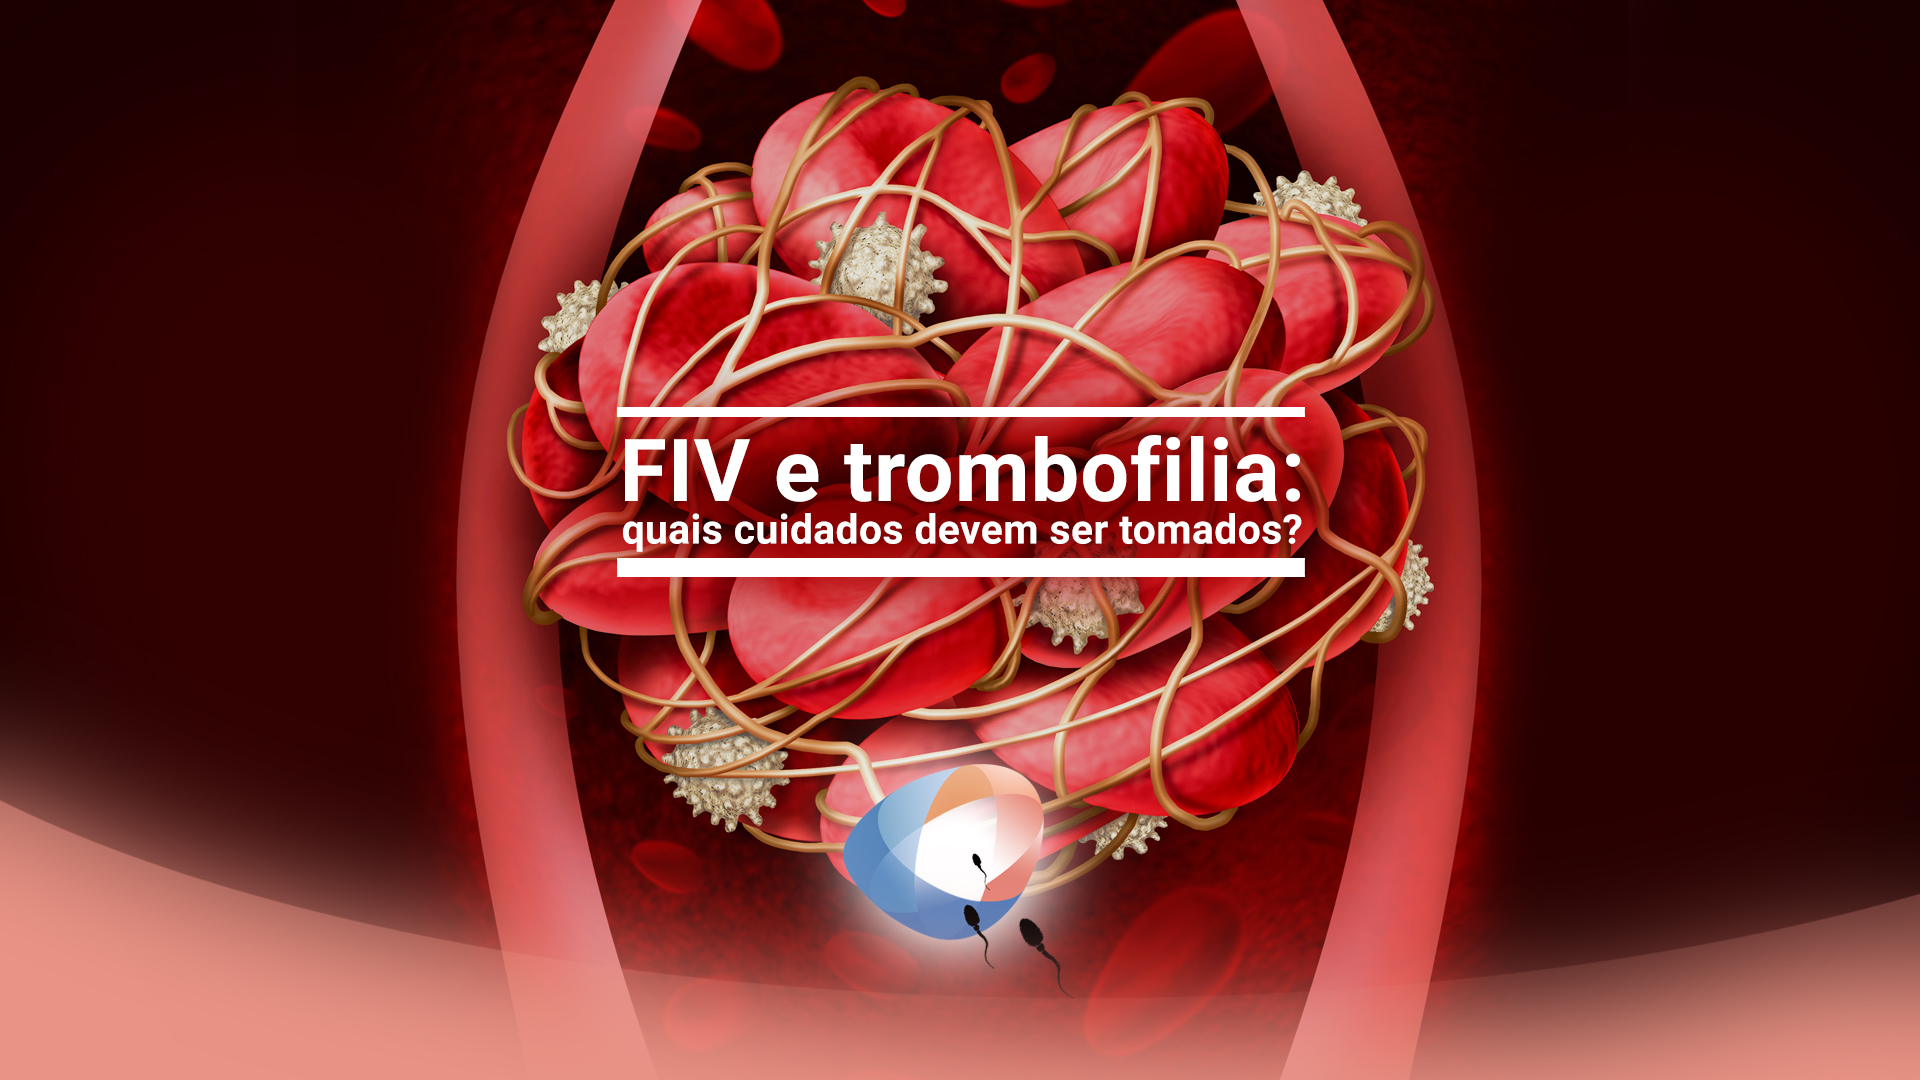 FIV e trombofilia: quais cuidados devem ser tomados?